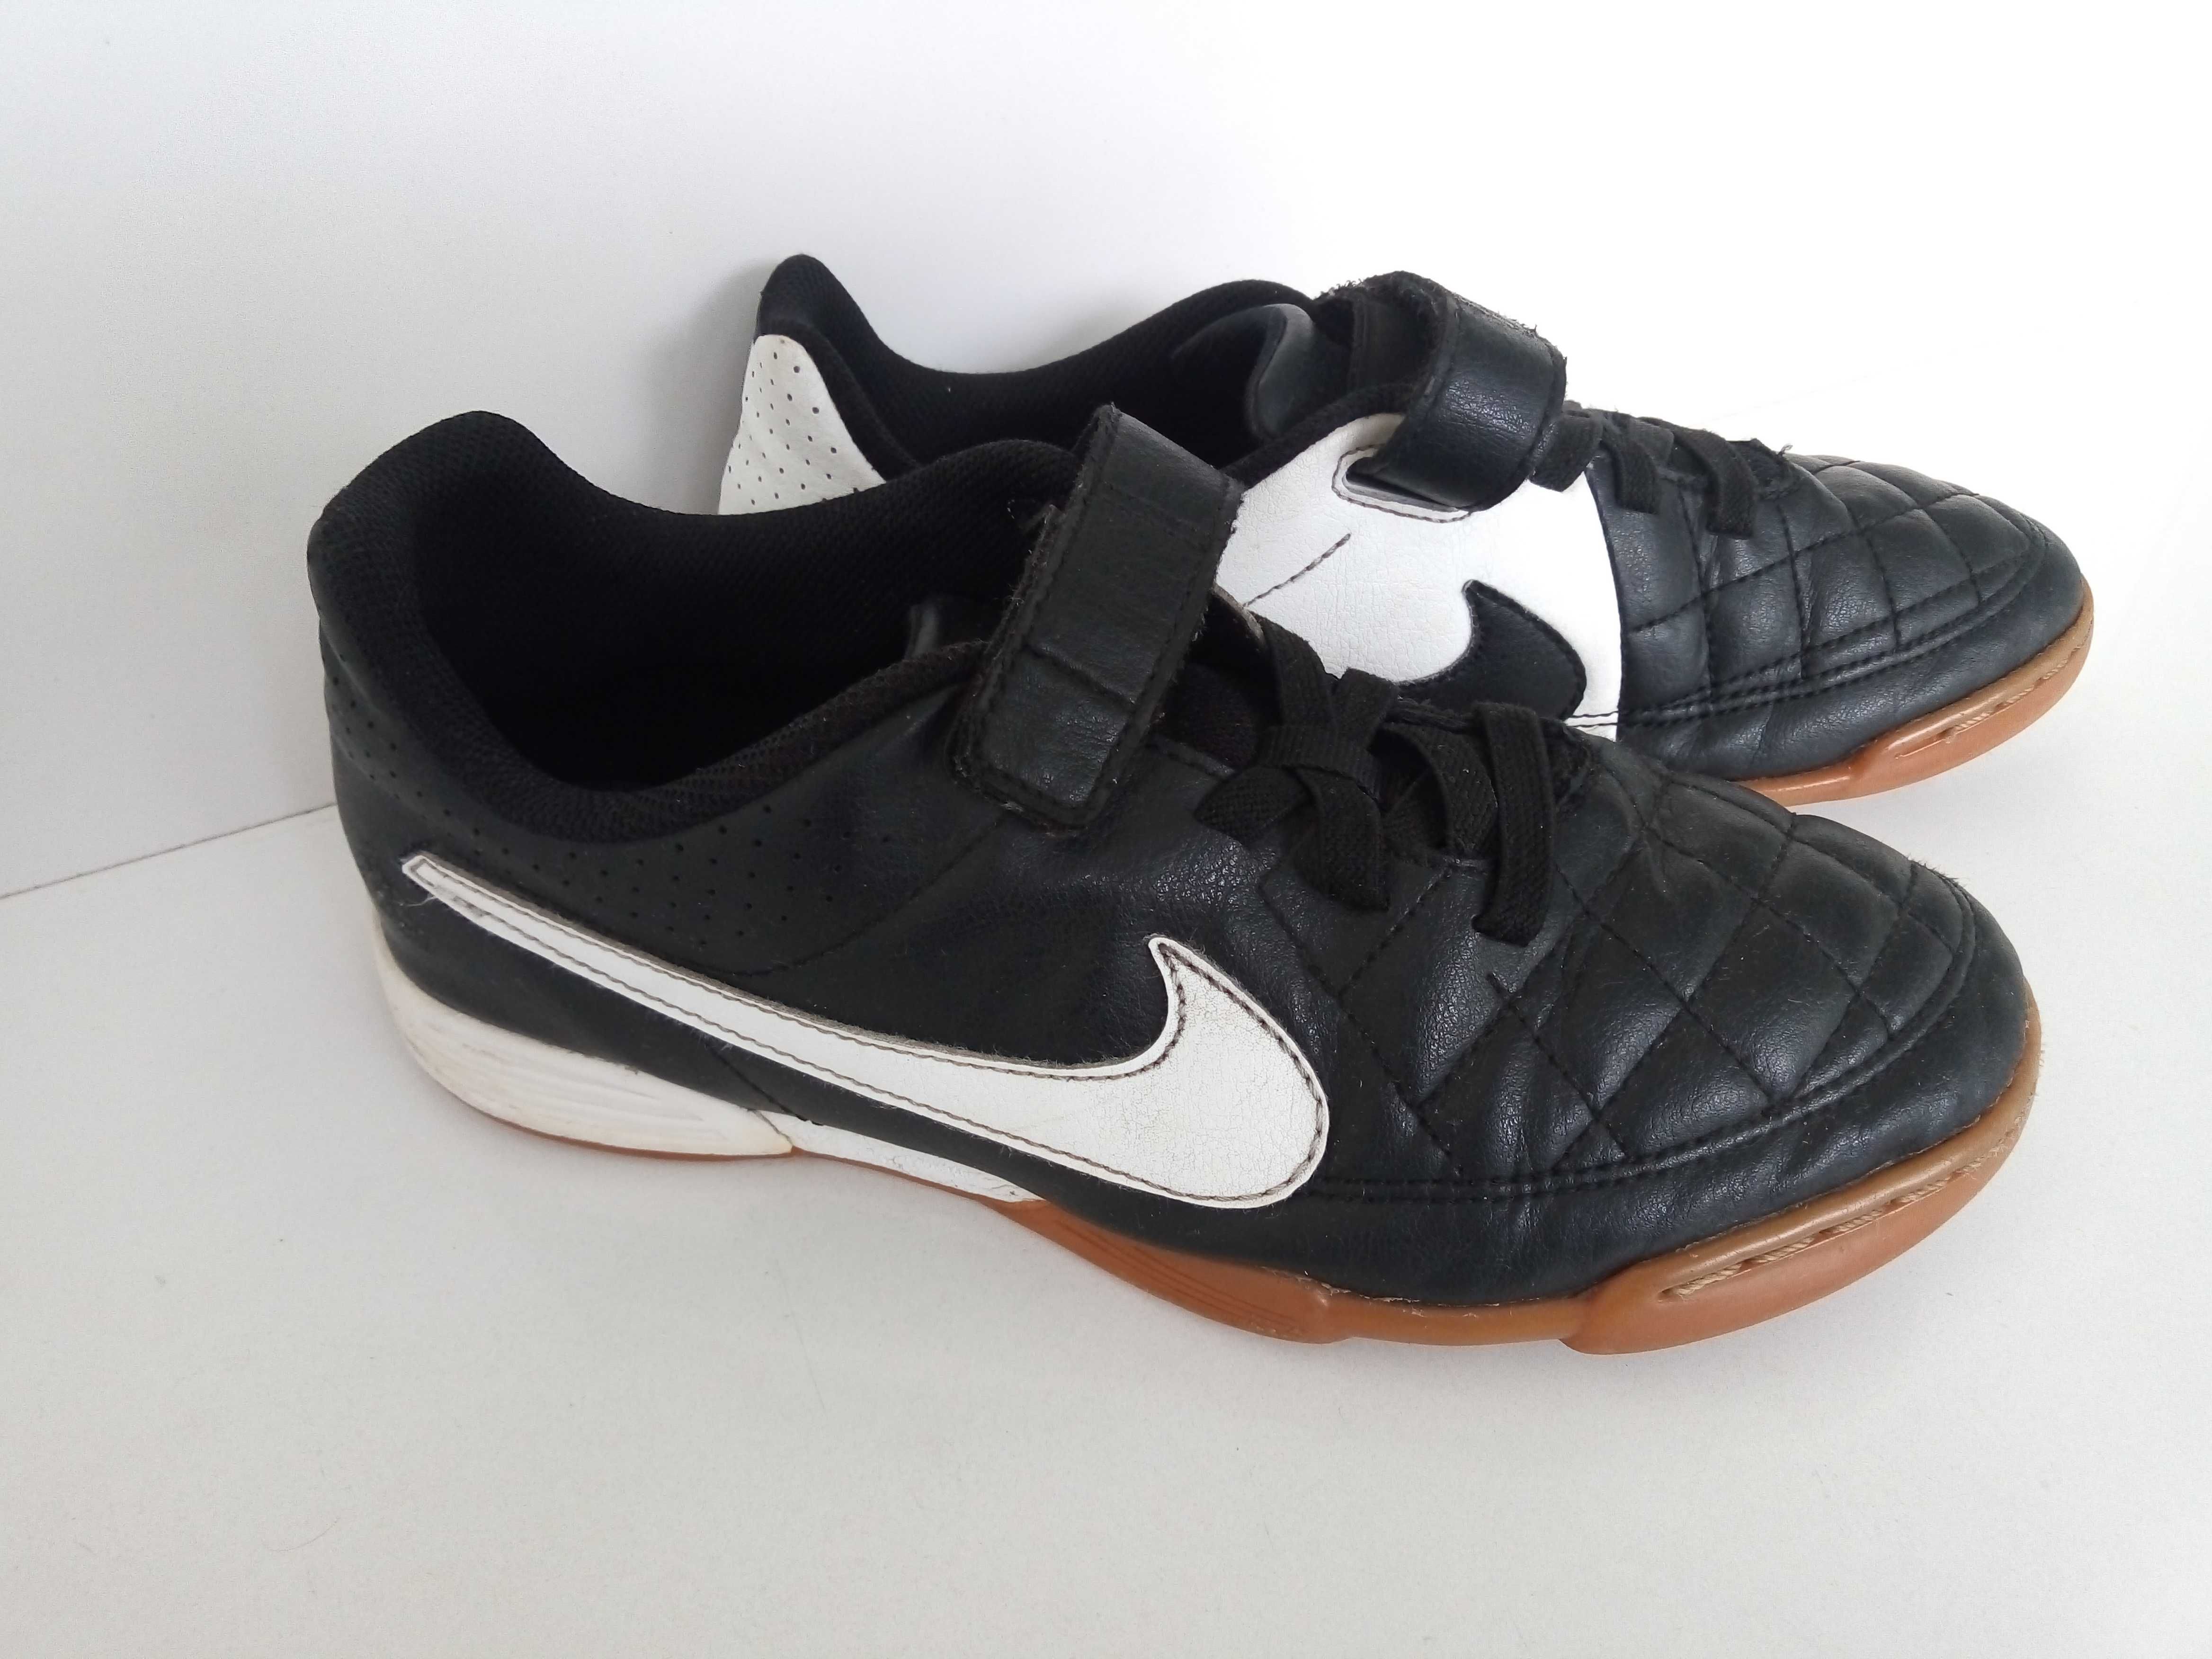 Sapatilhas futsal marca Nike tamanho 36.5, pretas e brancas